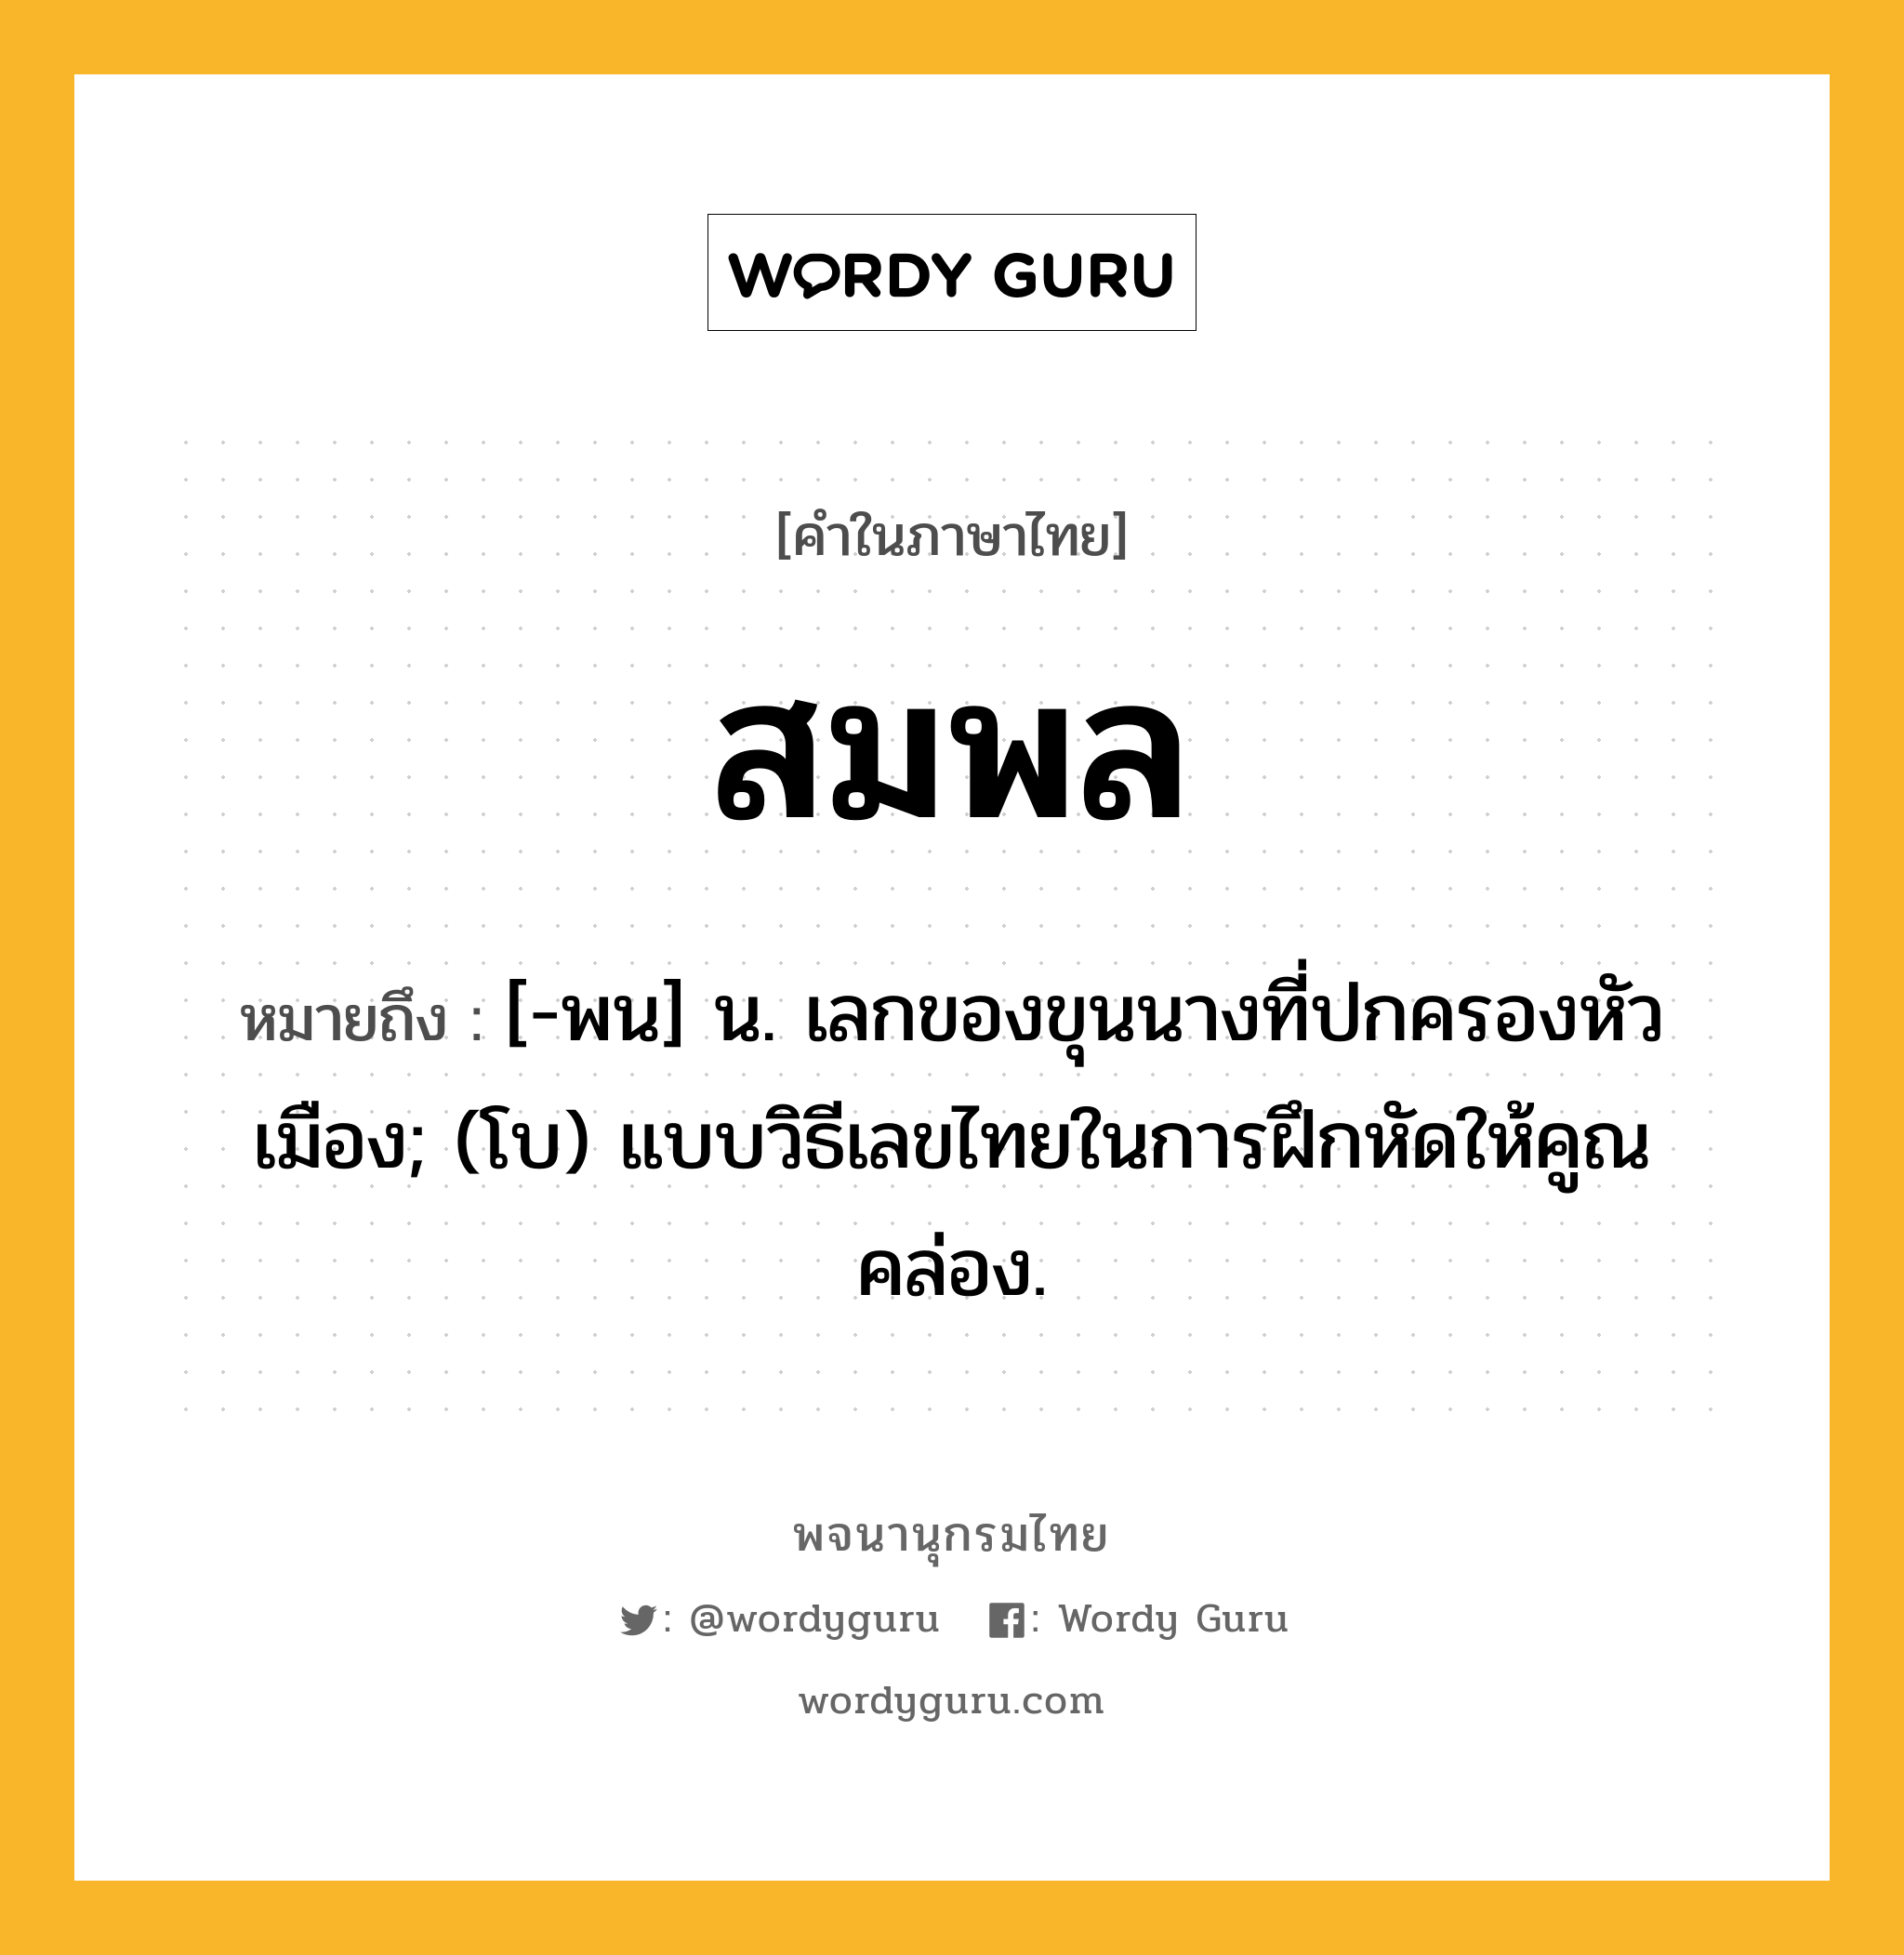 สมพล ความหมาย หมายถึงอะไร?, คำในภาษาไทย สมพล หมายถึง [-พน] น. เลกของขุนนางที่ปกครองหัวเมือง; (โบ) แบบวิธีเลขไทยในการฝึกหัดให้คูณคล่อง.